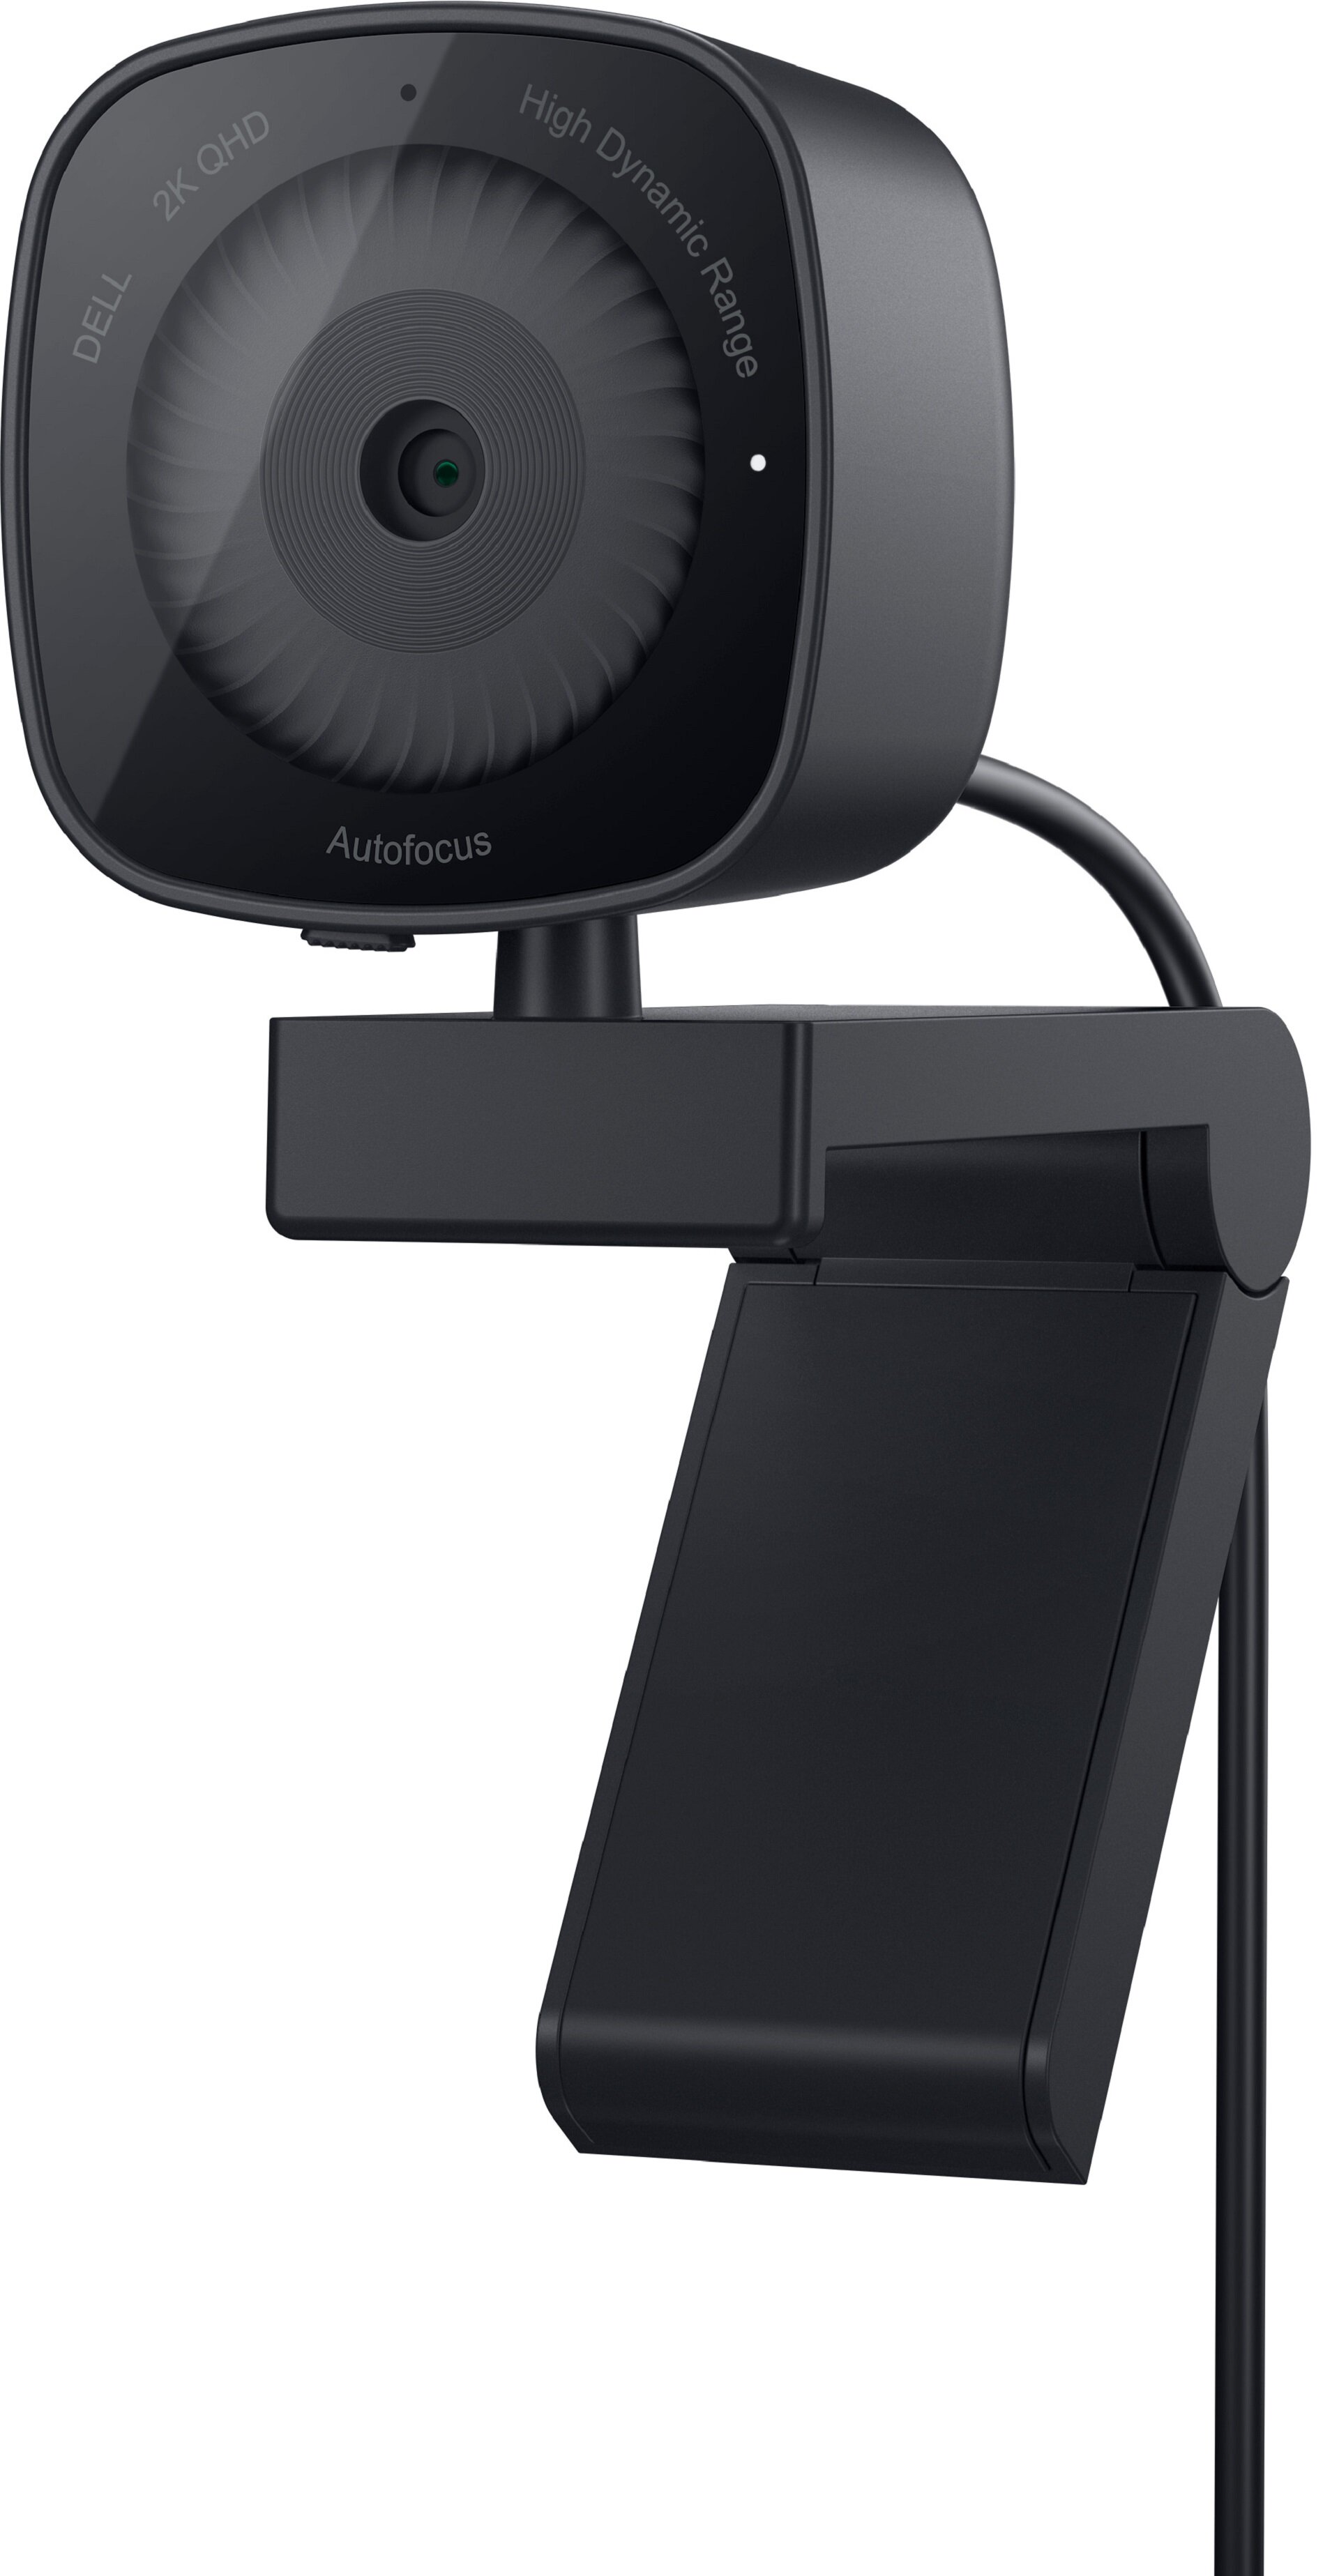 DELL WB3023 Kamera internetowa - niskie ceny i opinie w Media Expert